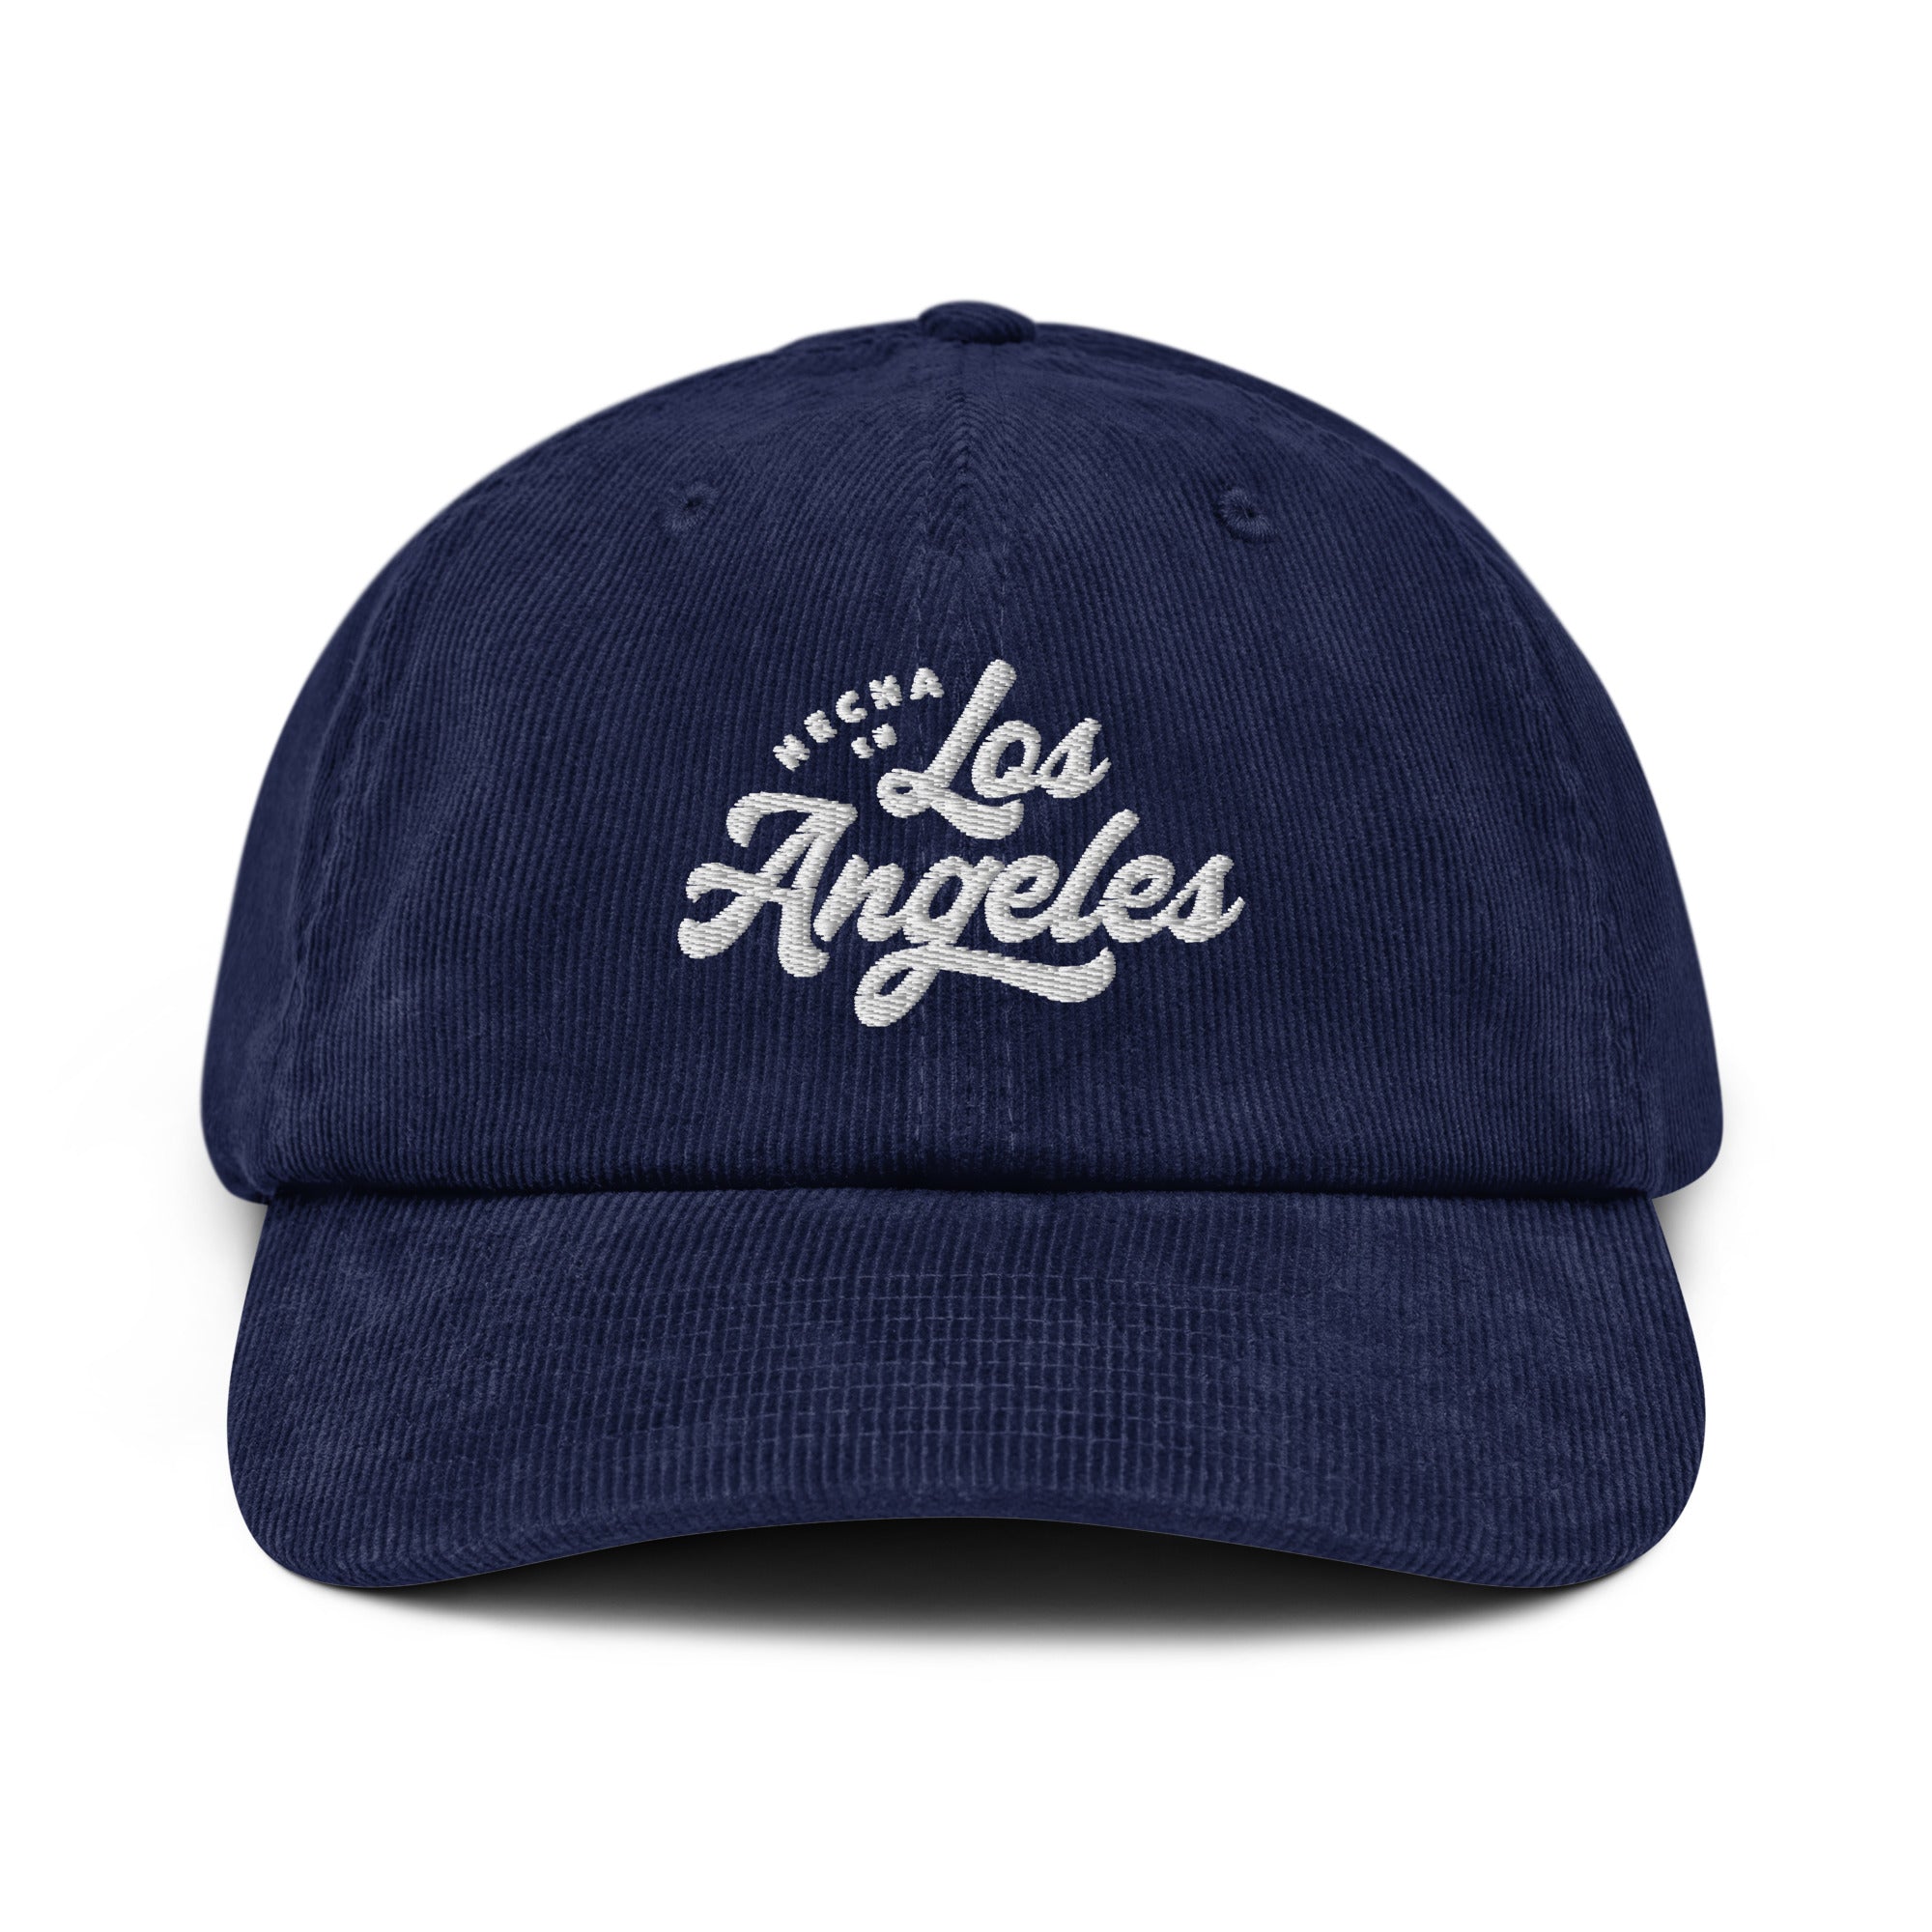 Hecha En Los Angeles Corduroy hat